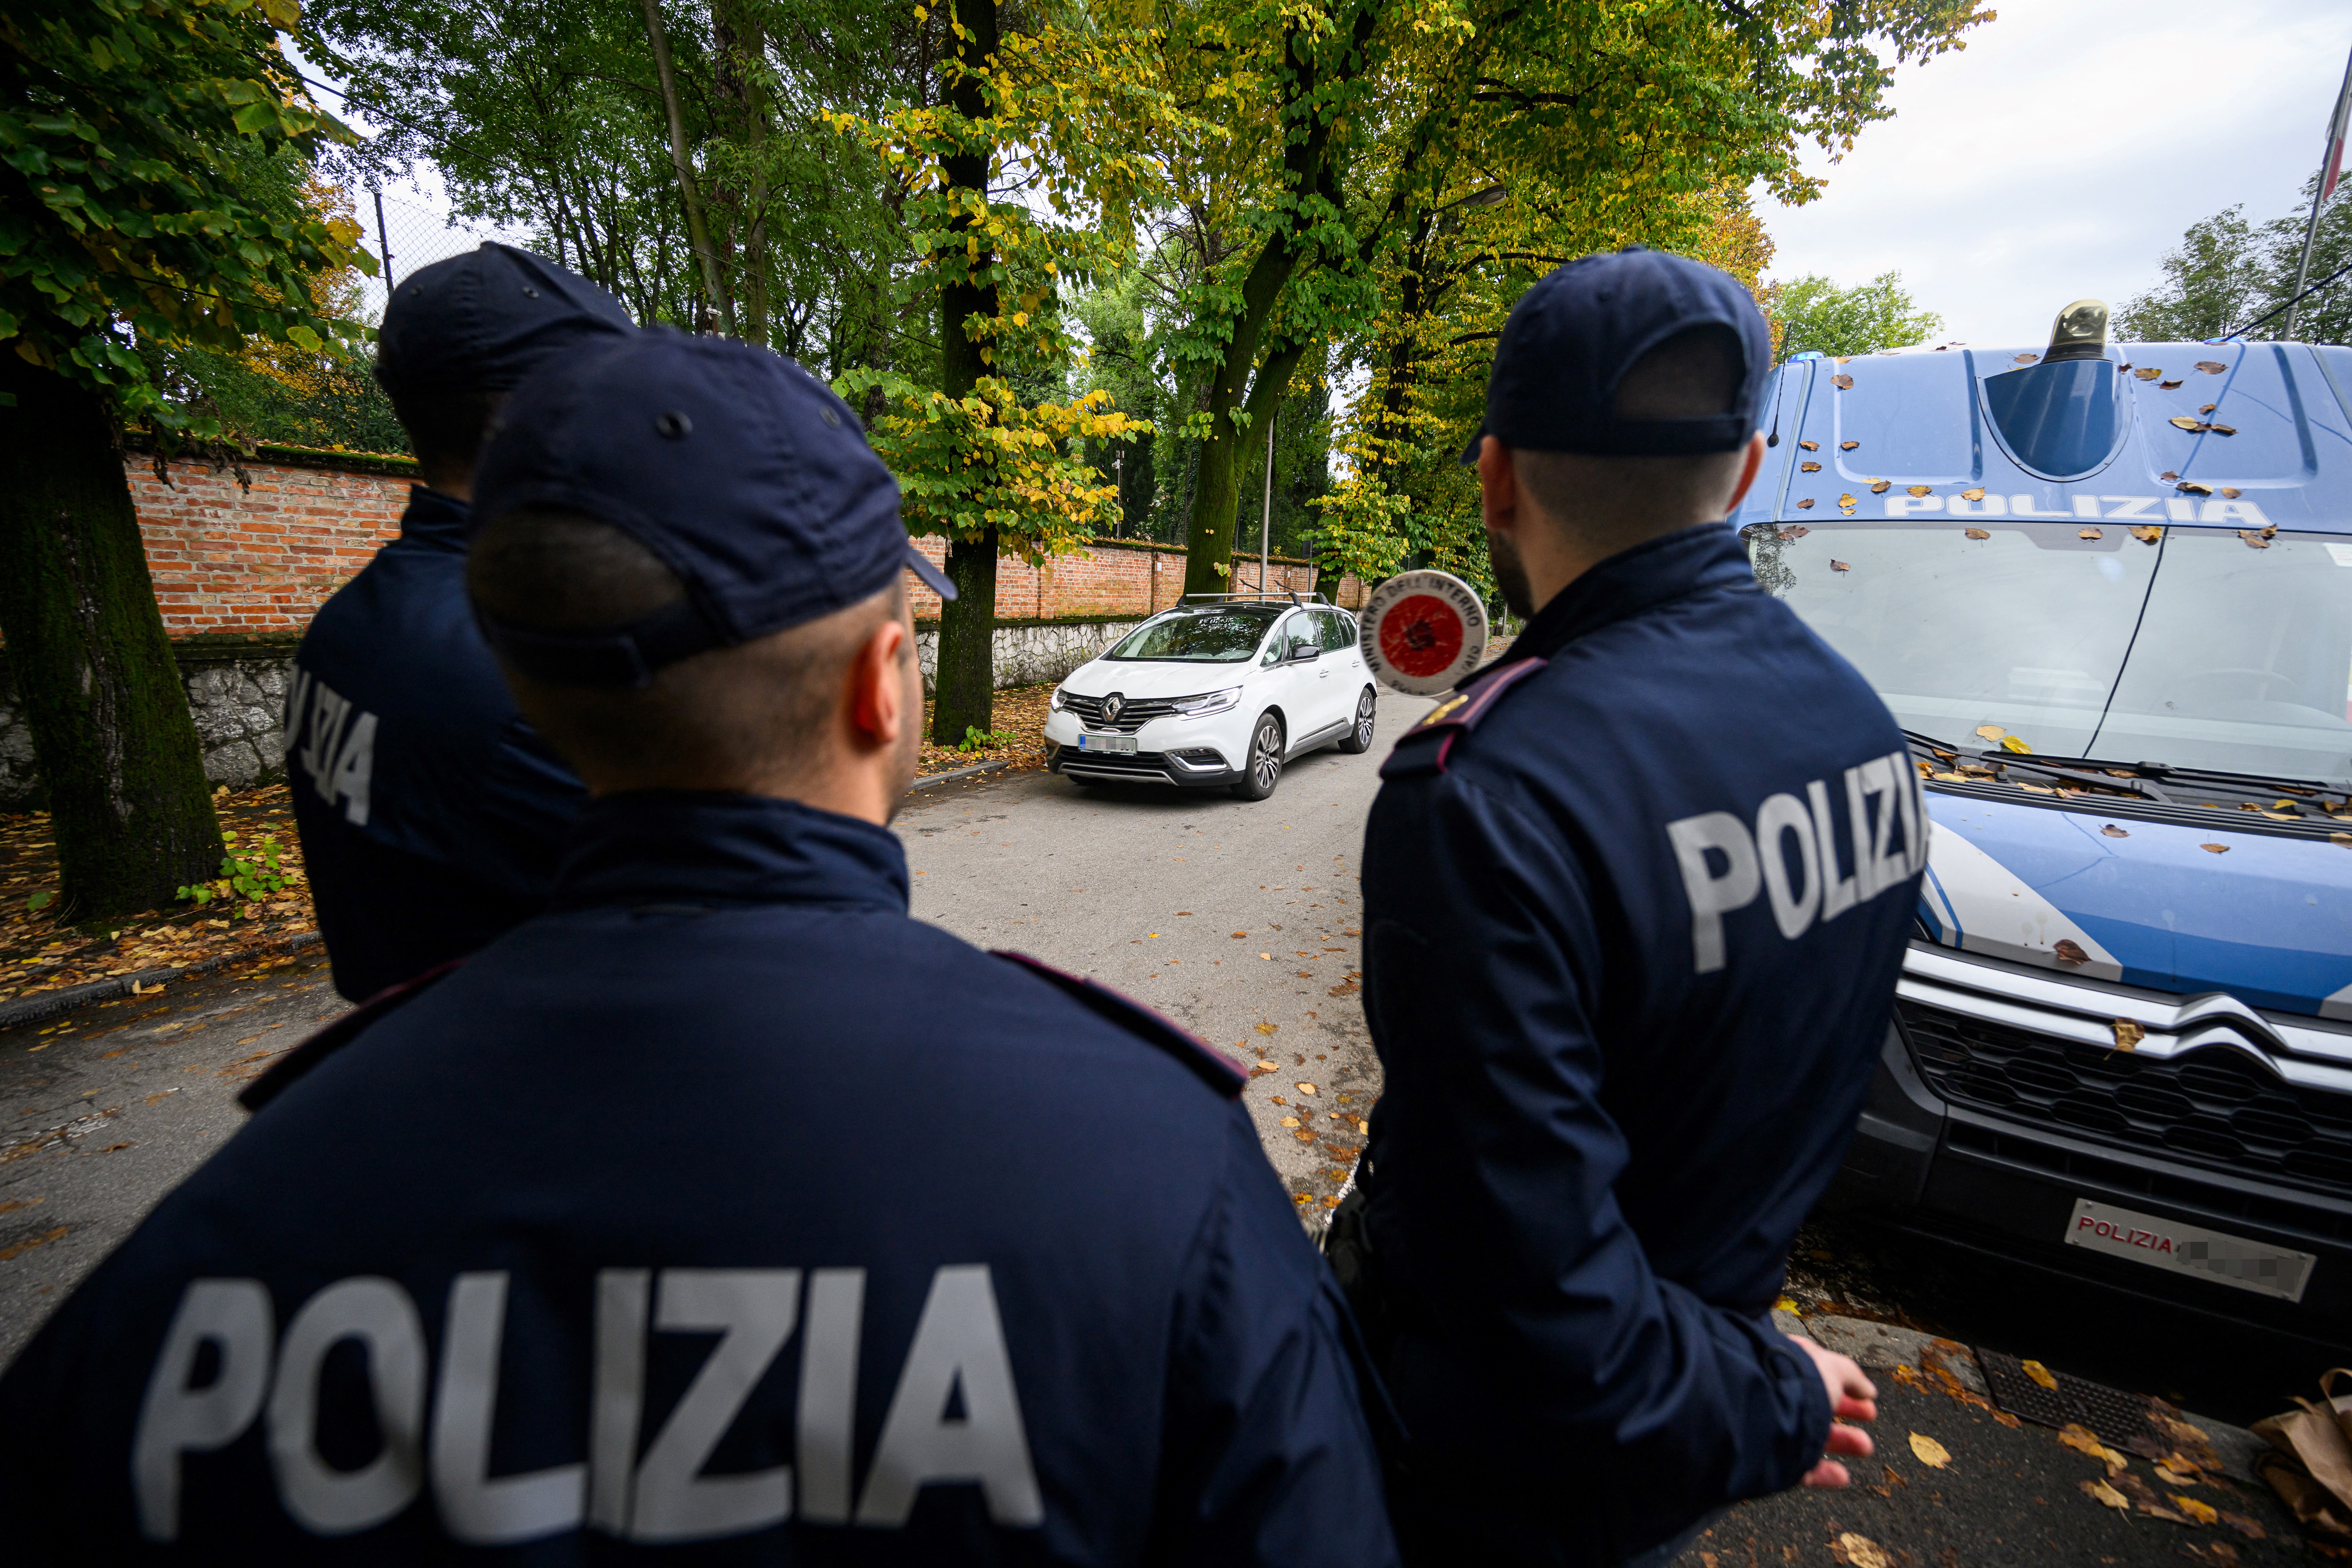 Le suspect avait été interpellé le 10 avril à Lyon et la procédure de remise à l’Italie enclenchée dans la foulée, selon le parquet de Grenoble. (Illustration) AFP / Jure Makovec